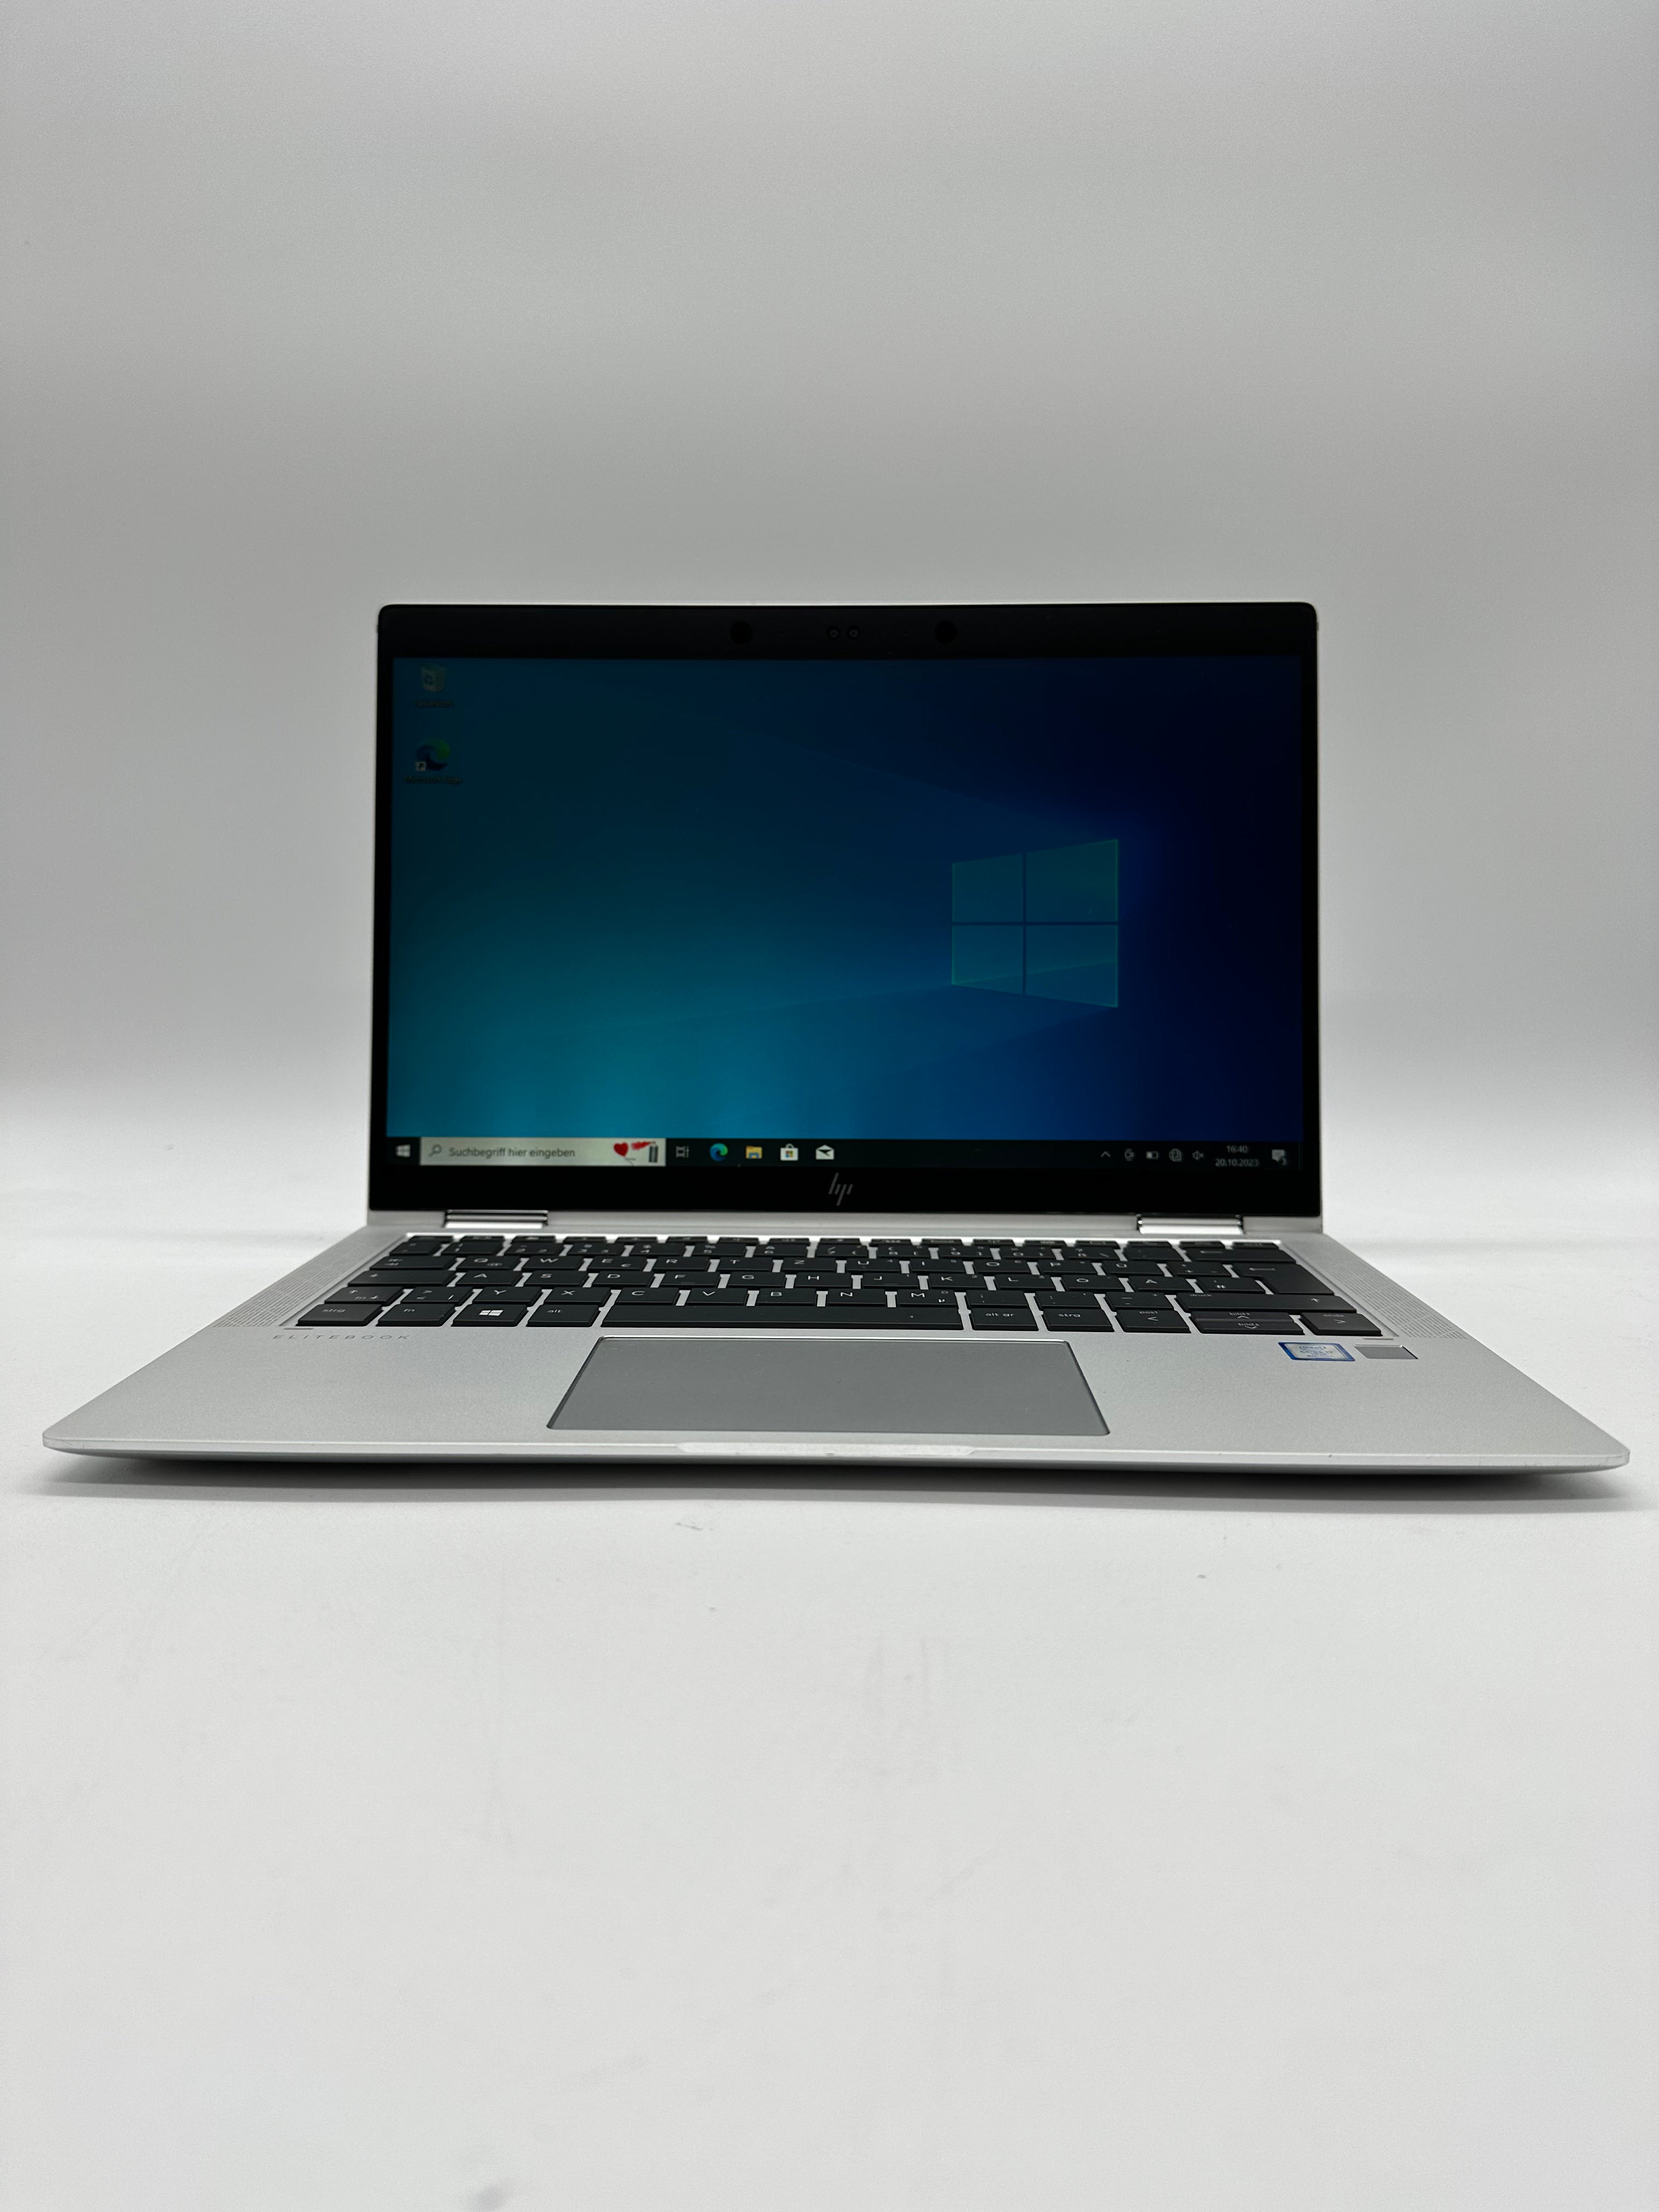 HP EliteBook x360 1030 G3 2-in-1 i7-8550U 16GB 256GB 14&quot; 360° Laptops Notebook-Pro Intel Core i7-8550U 16GB DDR4 256GB